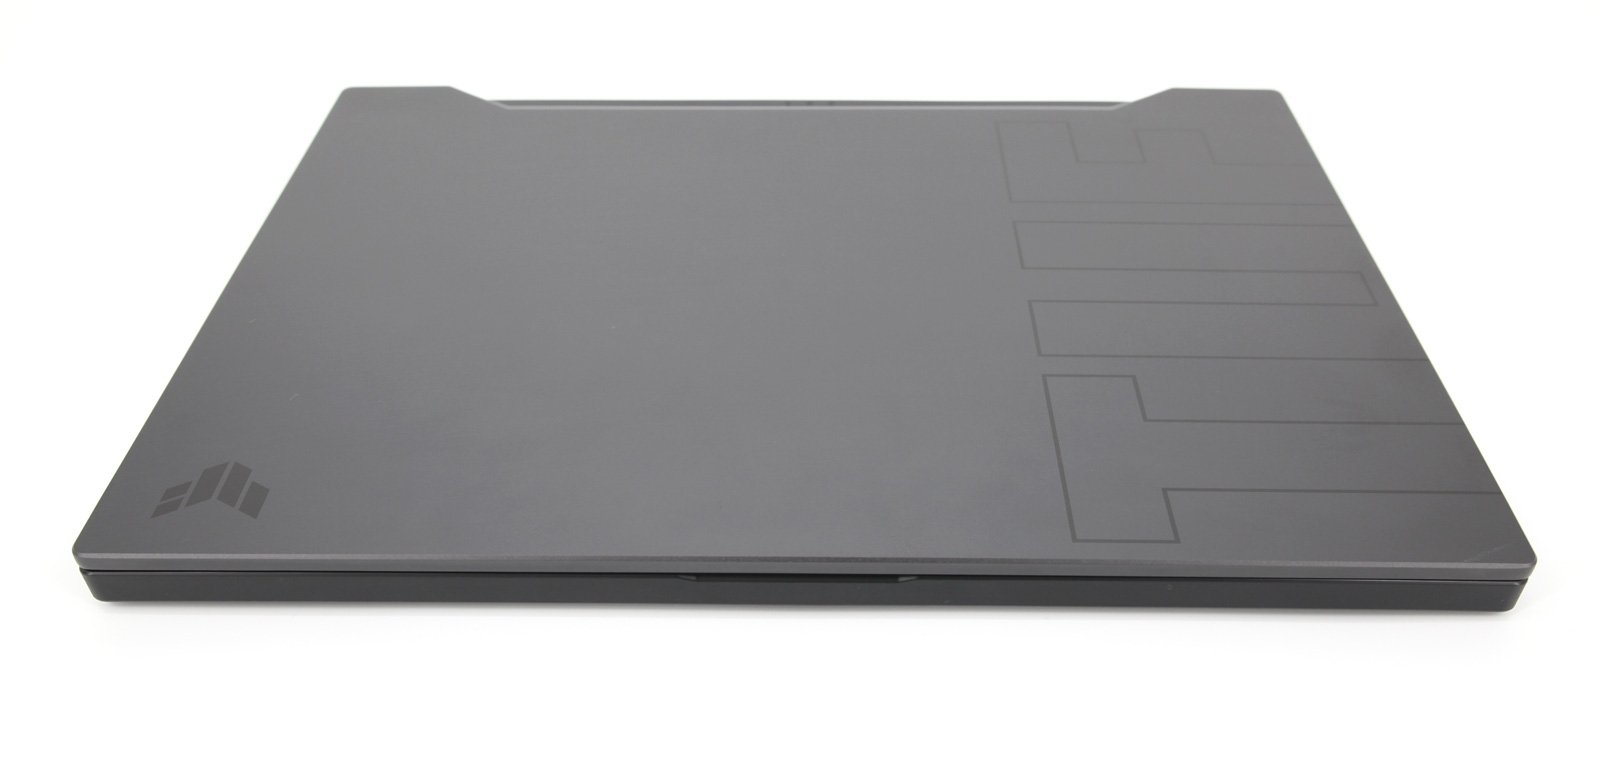 ASUS TUF Dash F15 15.6" Gaming Laptop: 11th Gen Intel, RTX 3070, RAM, 512GB SSD - CruiseTech